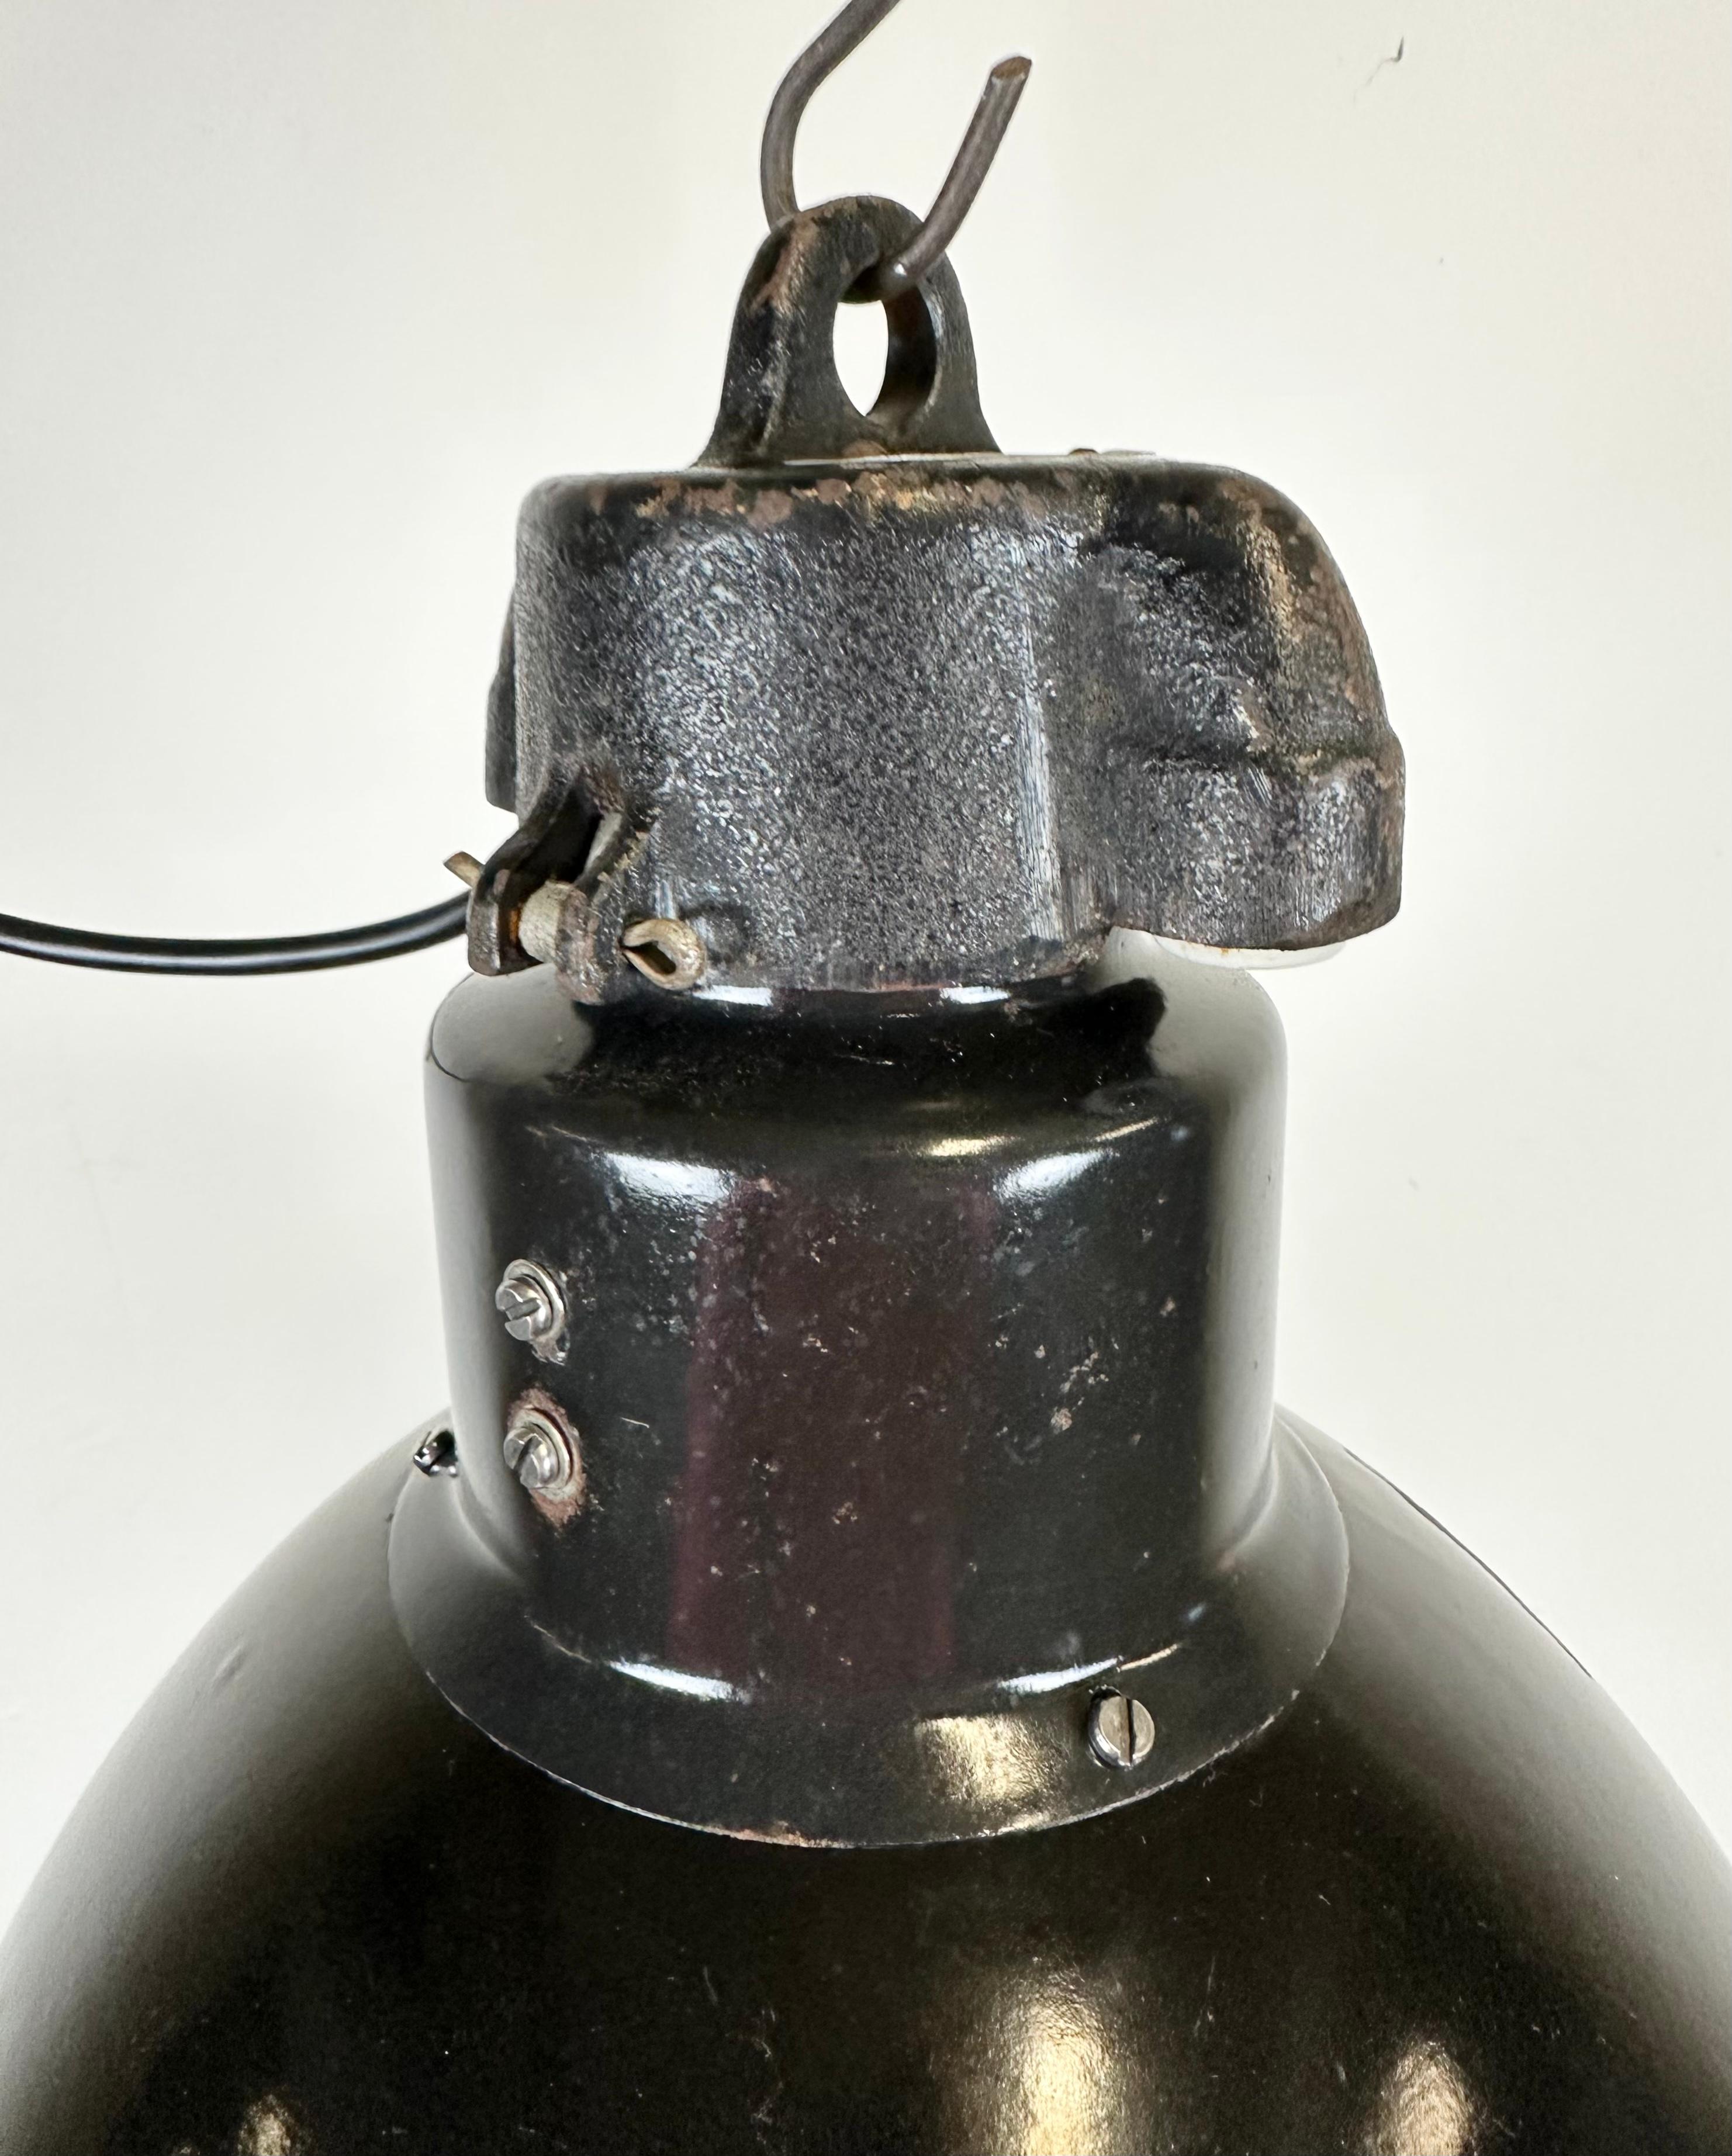 Industrial Bauhaus Black Enamel Pendant Lamp, 1930s For Sale 1